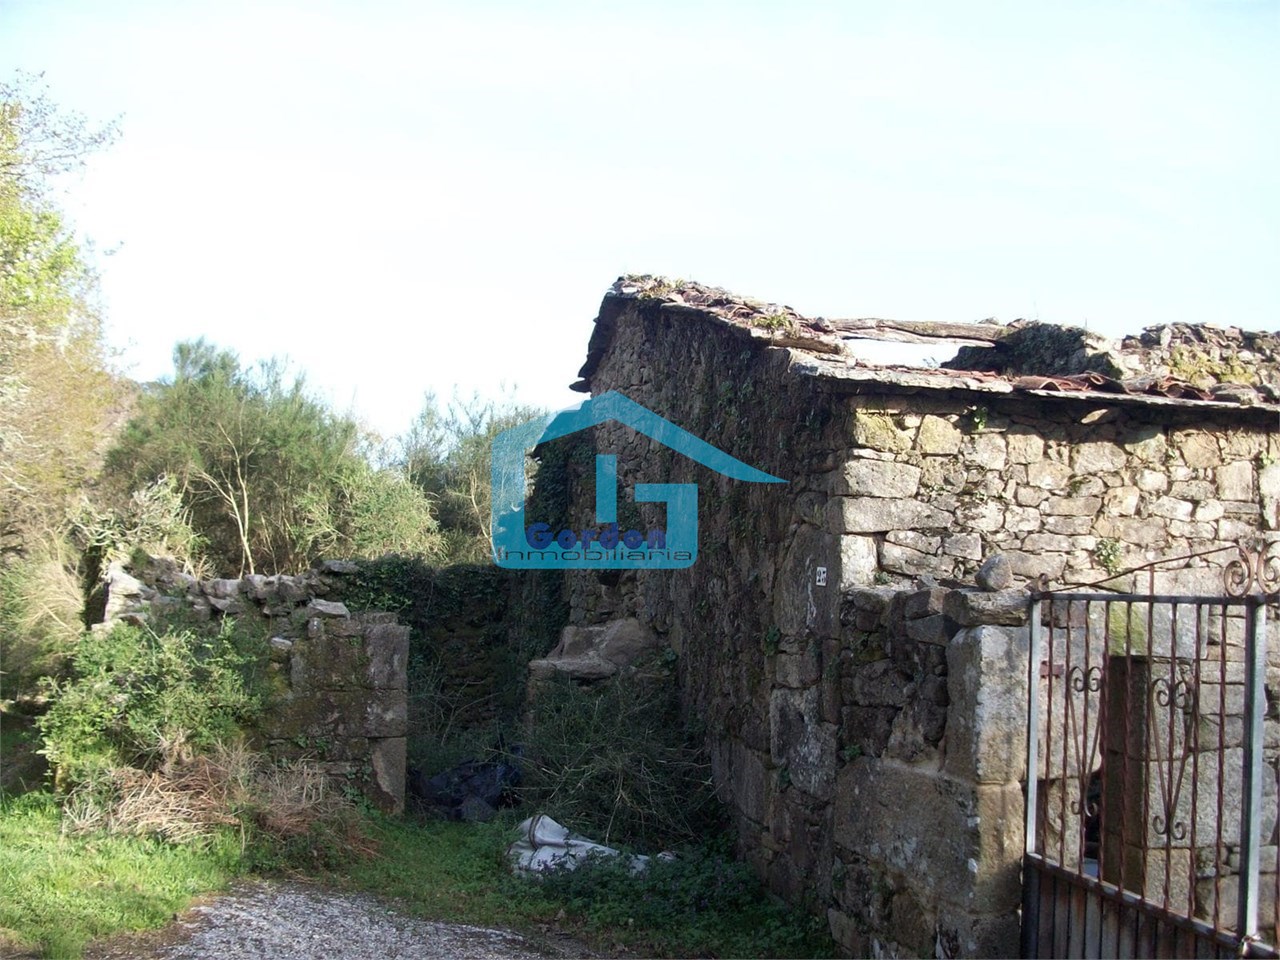 Foto 28 Cerdedo: A5826: Casa de piedra en ruinas, con finca alrededor... preciosas vistas...